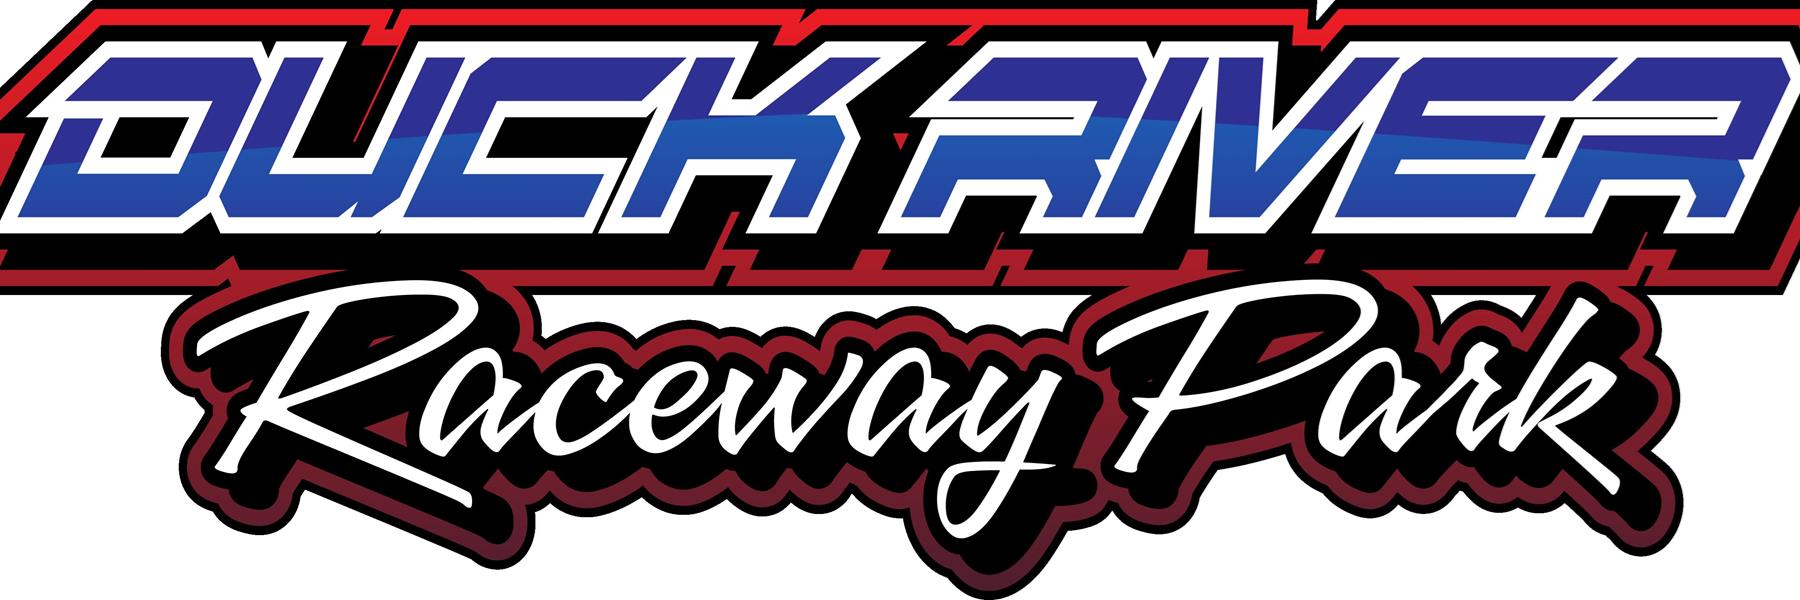 8/12/2022 - Duck River Raceway Park